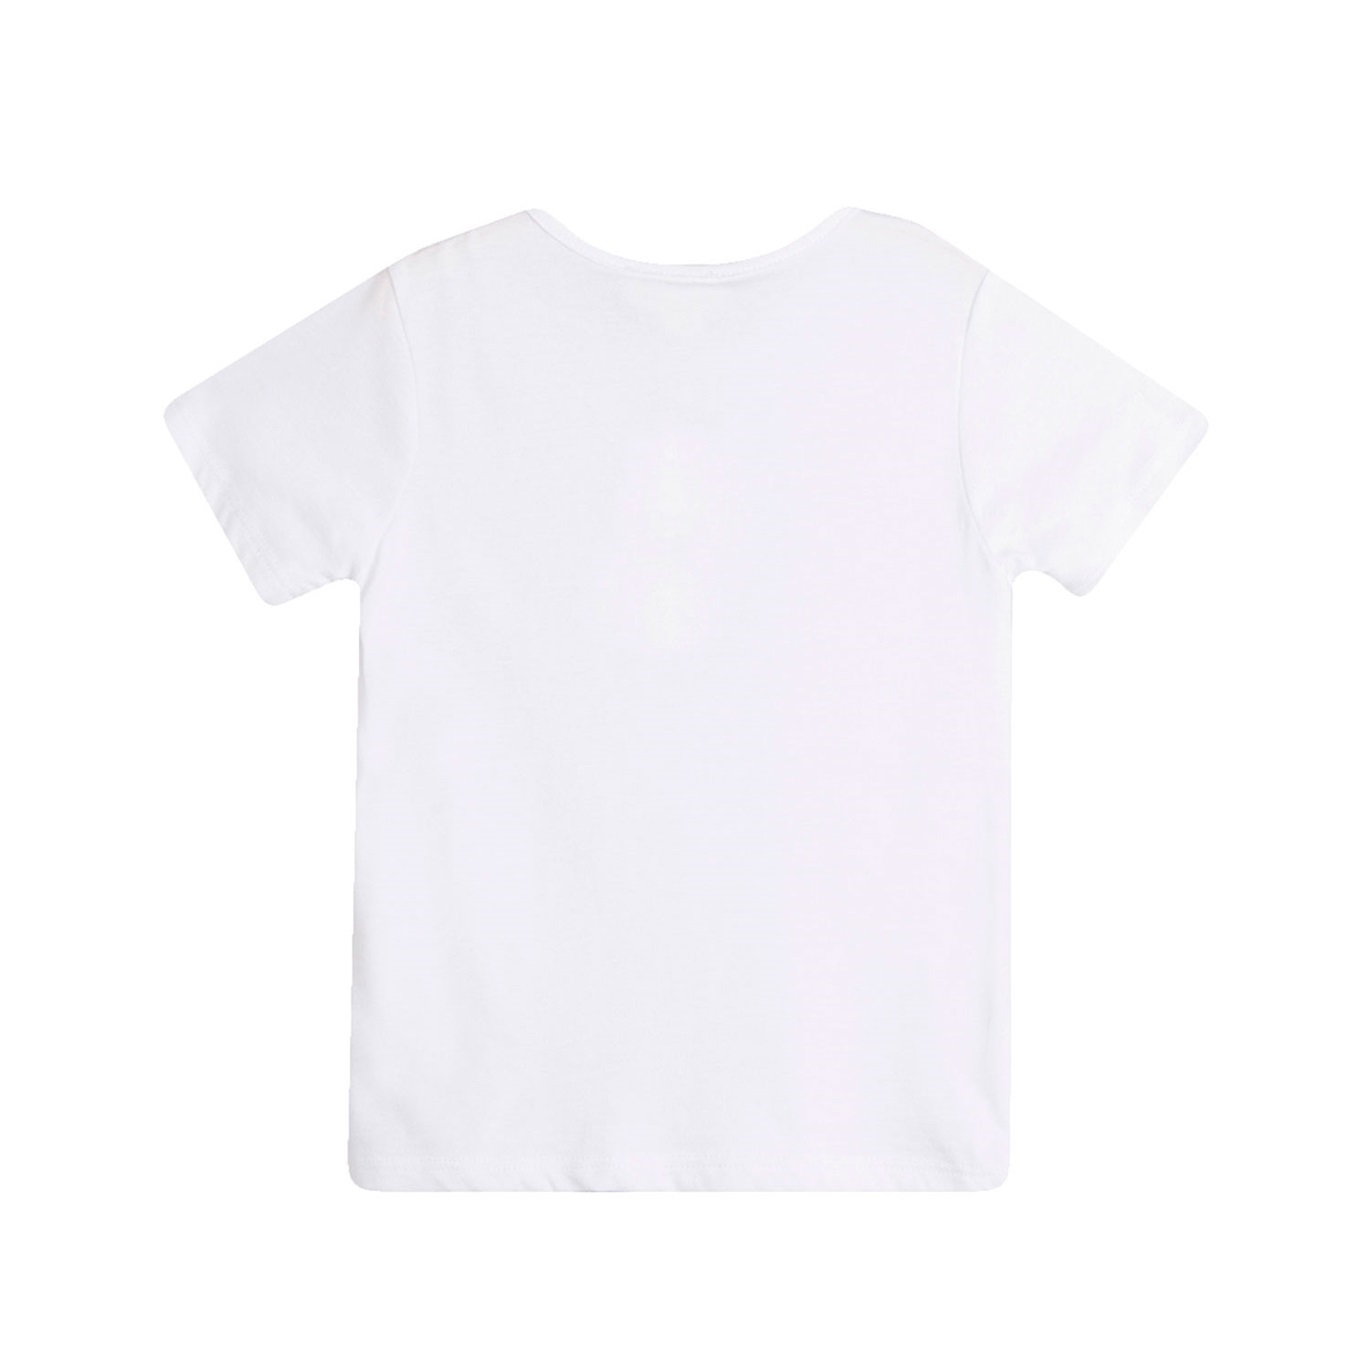 Imagen de Camiseta de bebé niño en blanco con print tortuga